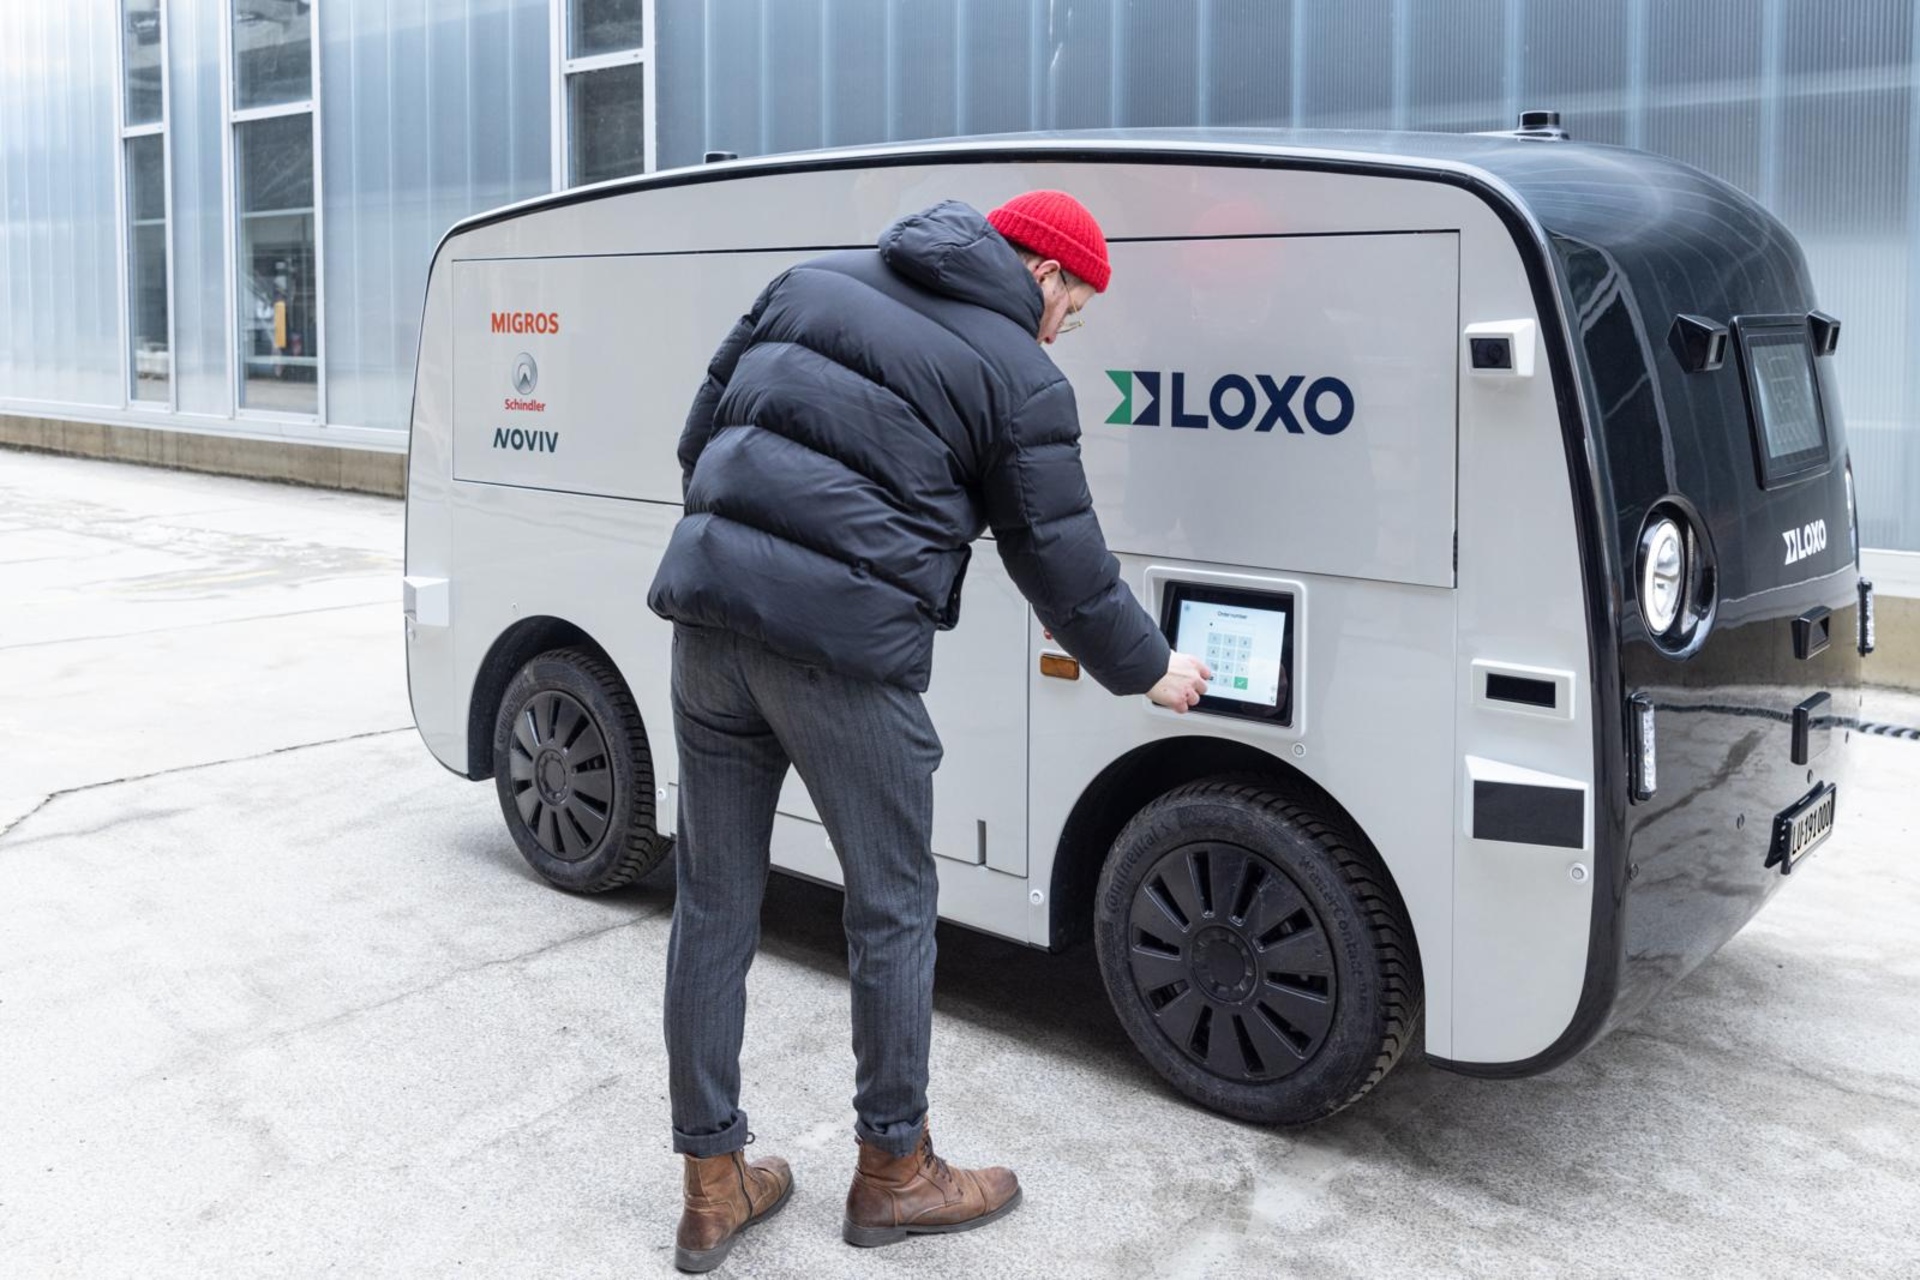 Migronomous: de zelfrijdende elektrische bestelwagen die dagelijks de Migros-supermarkt en de Schindler-fabrieken in Ebikon in het kanton Luzern met elkaar verbindt